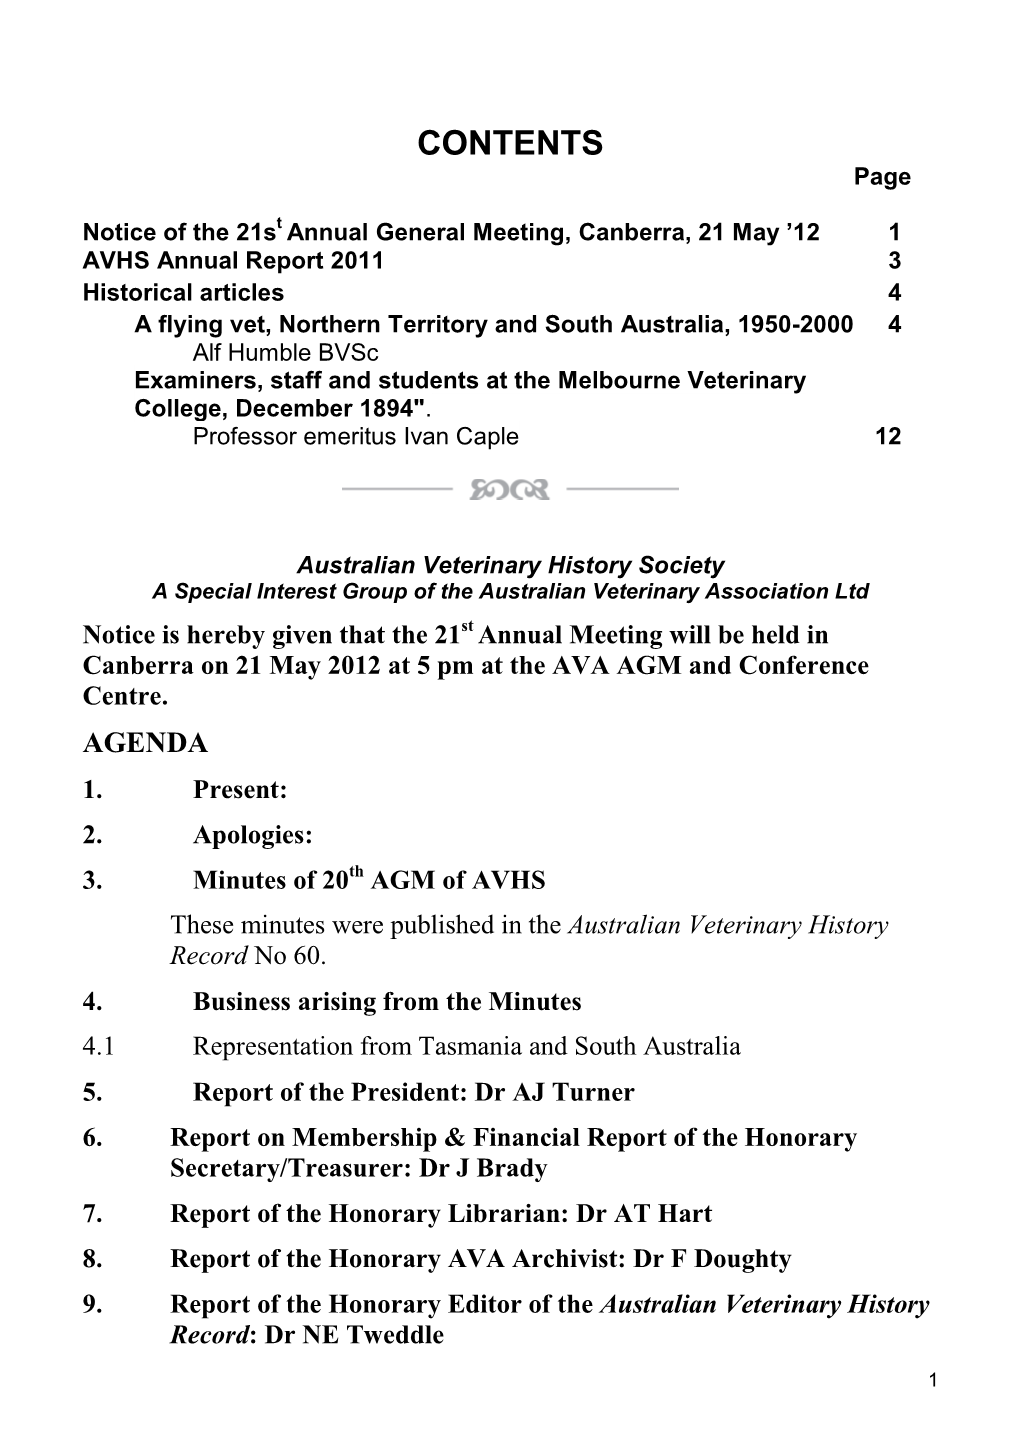 AVHS HISTORY RECORD #61 Feb12.Pdf (PDF, 484.76KB)